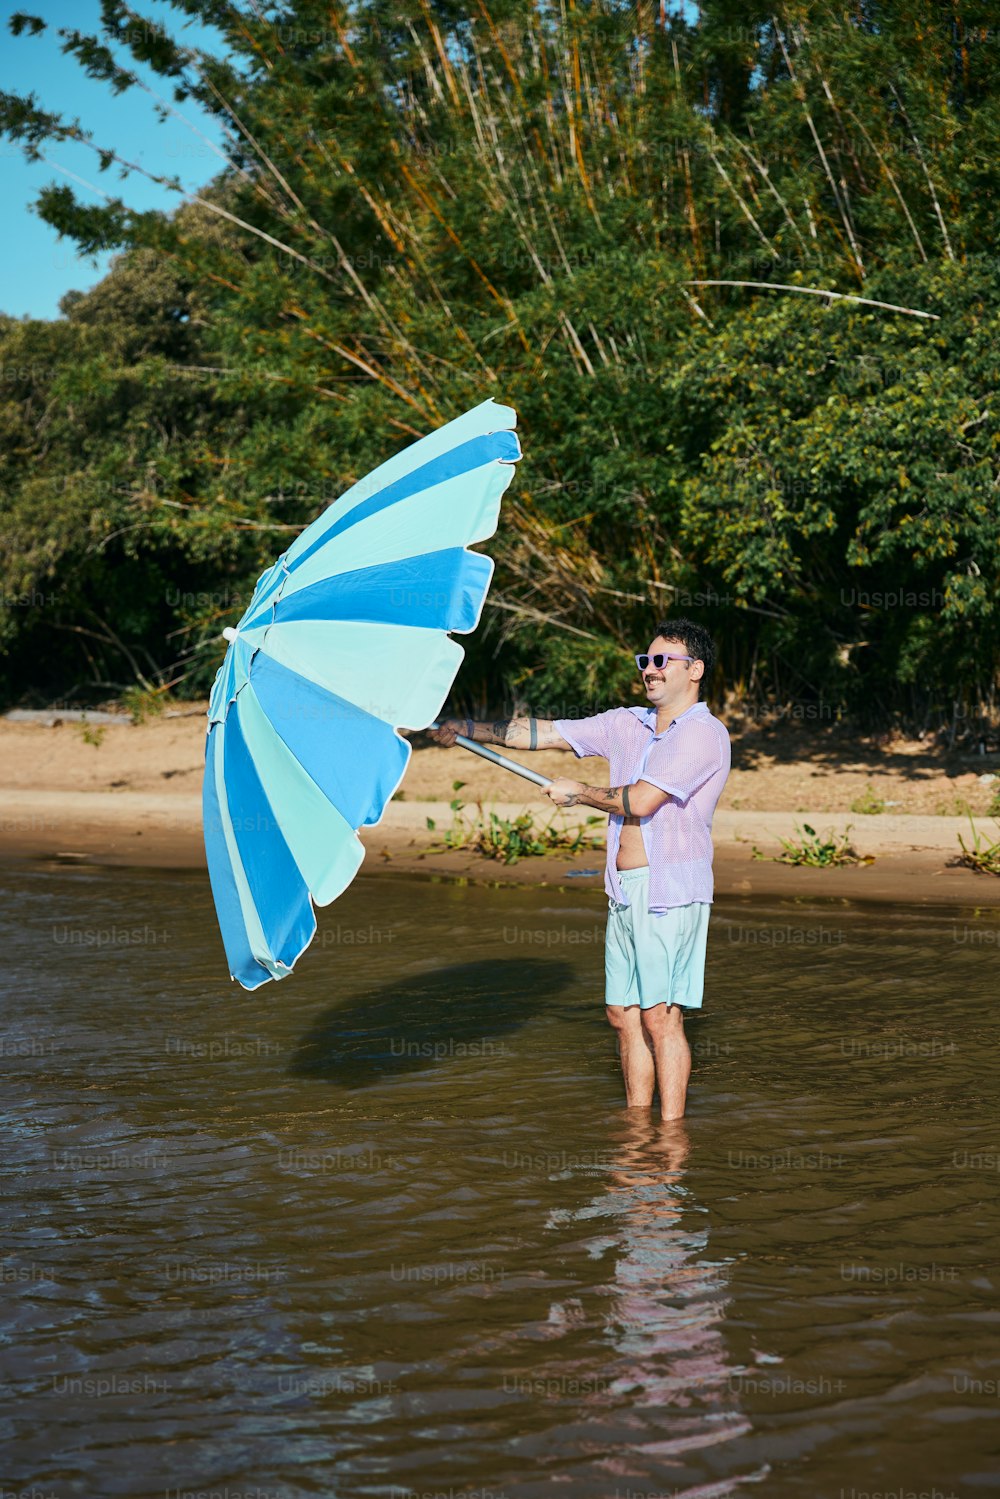 Un uomo in piedi nell'acqua con in mano un ombrello blu e bianco